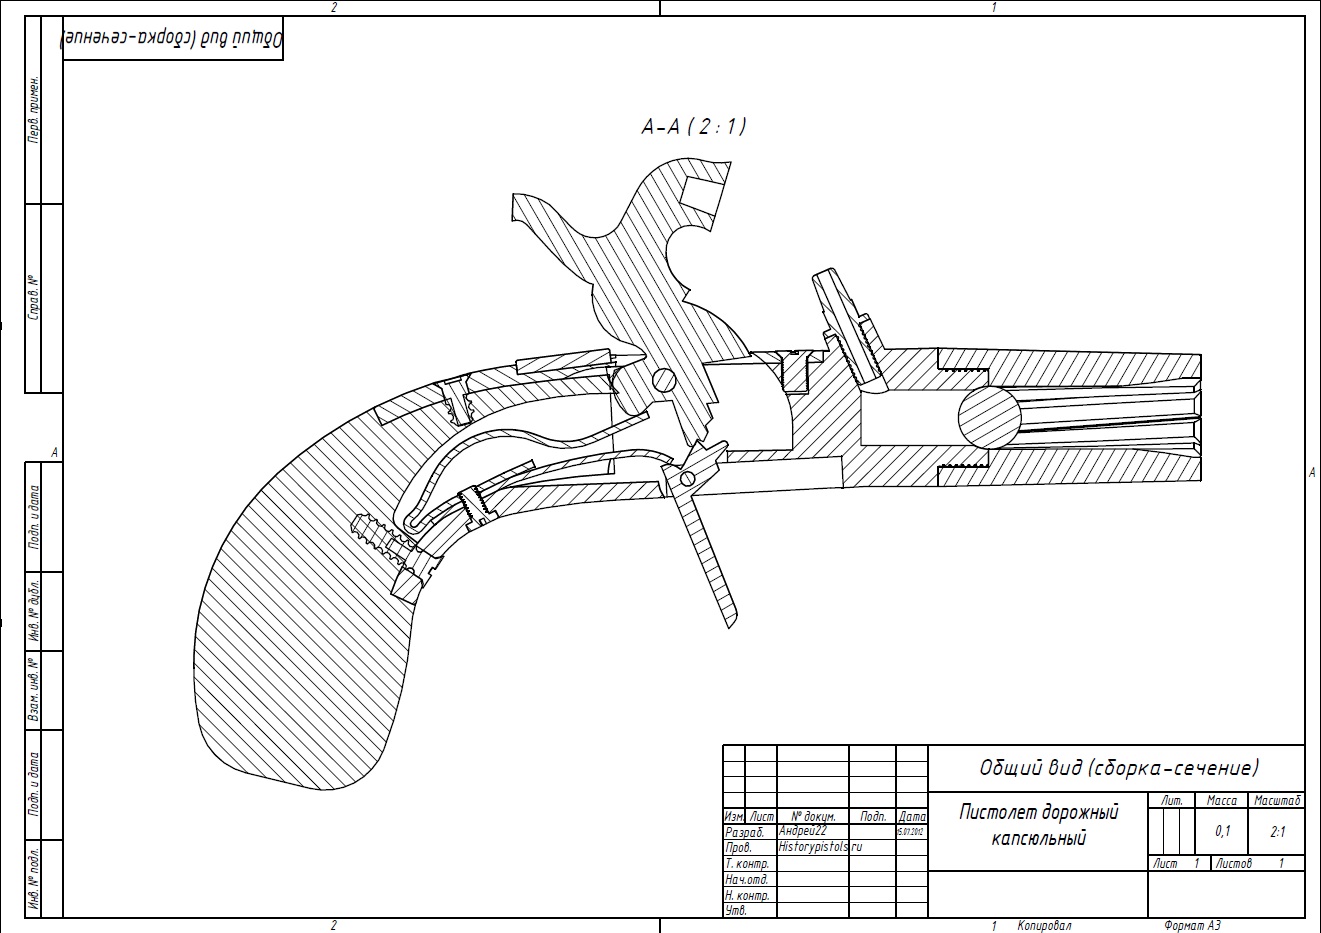 boxlock percussion pocket pistol blueprints